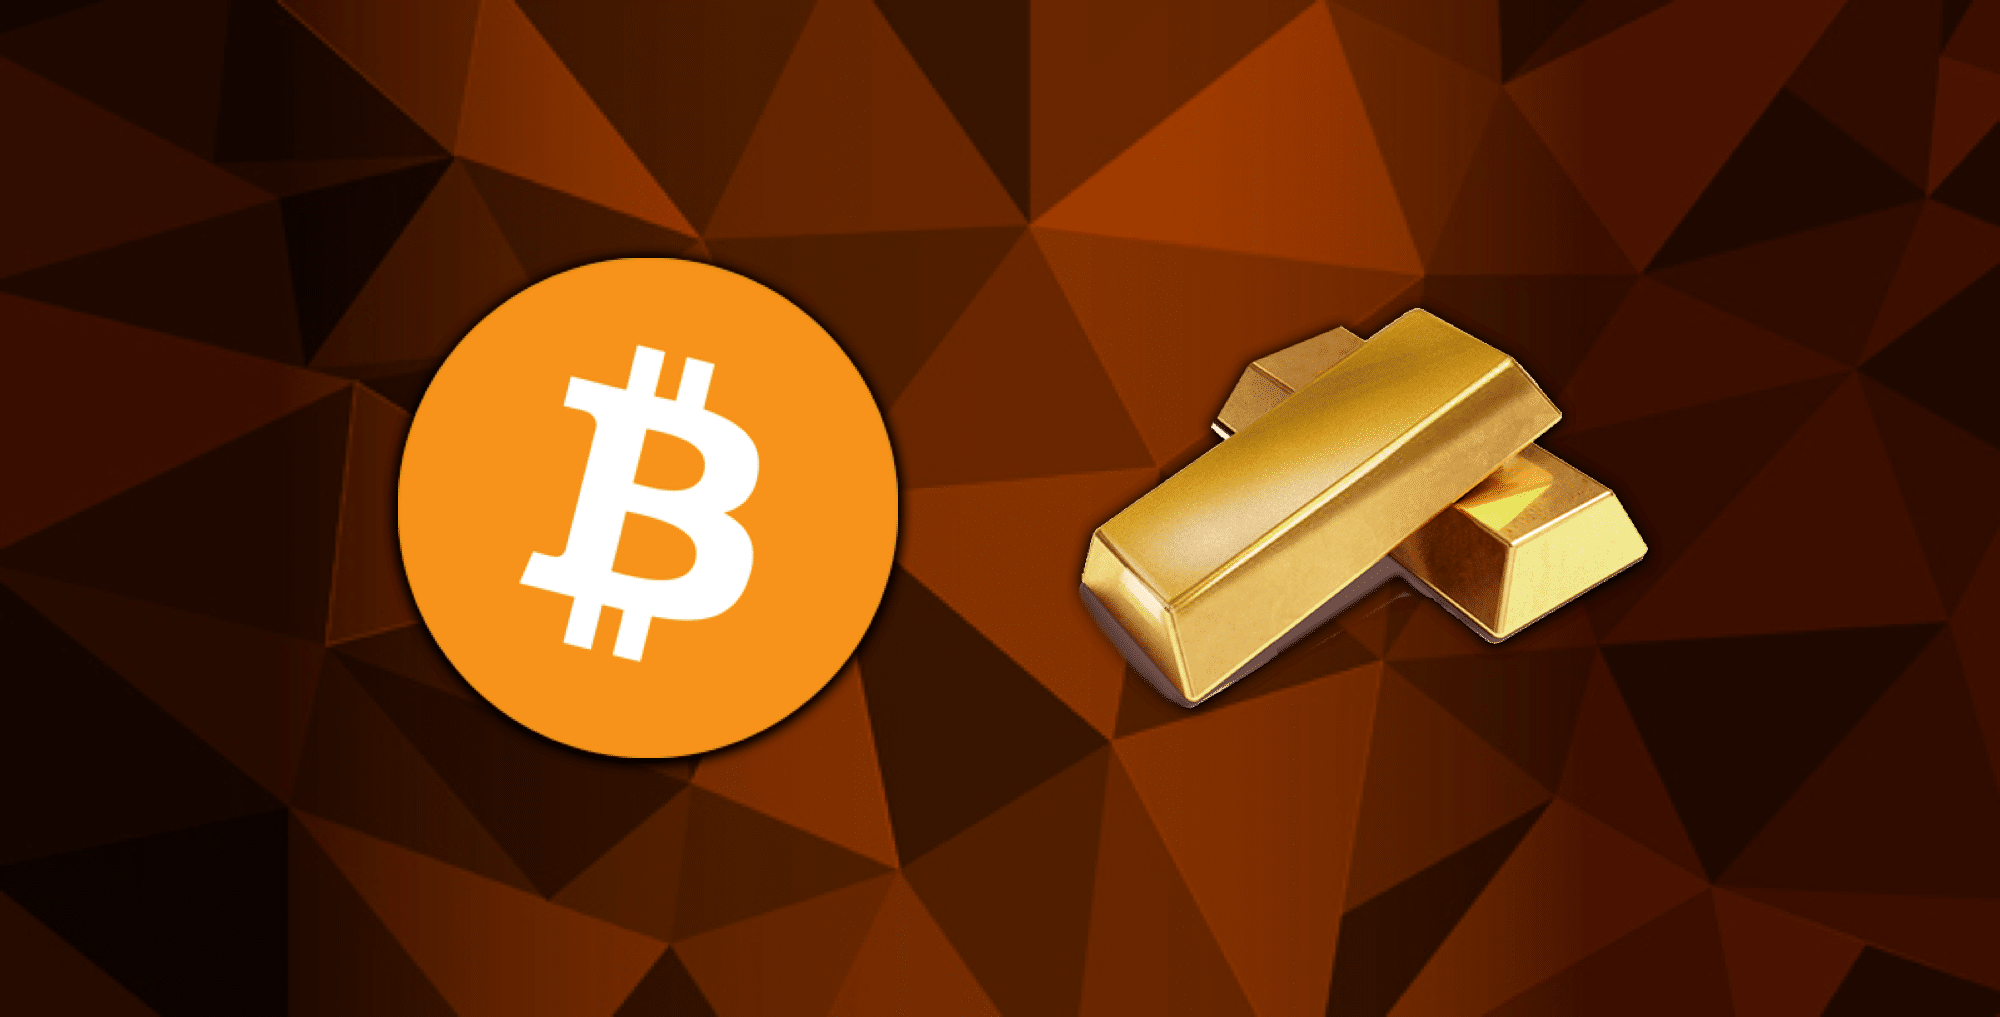 bitcoin cash vs bitcoin gold vs bitcoin